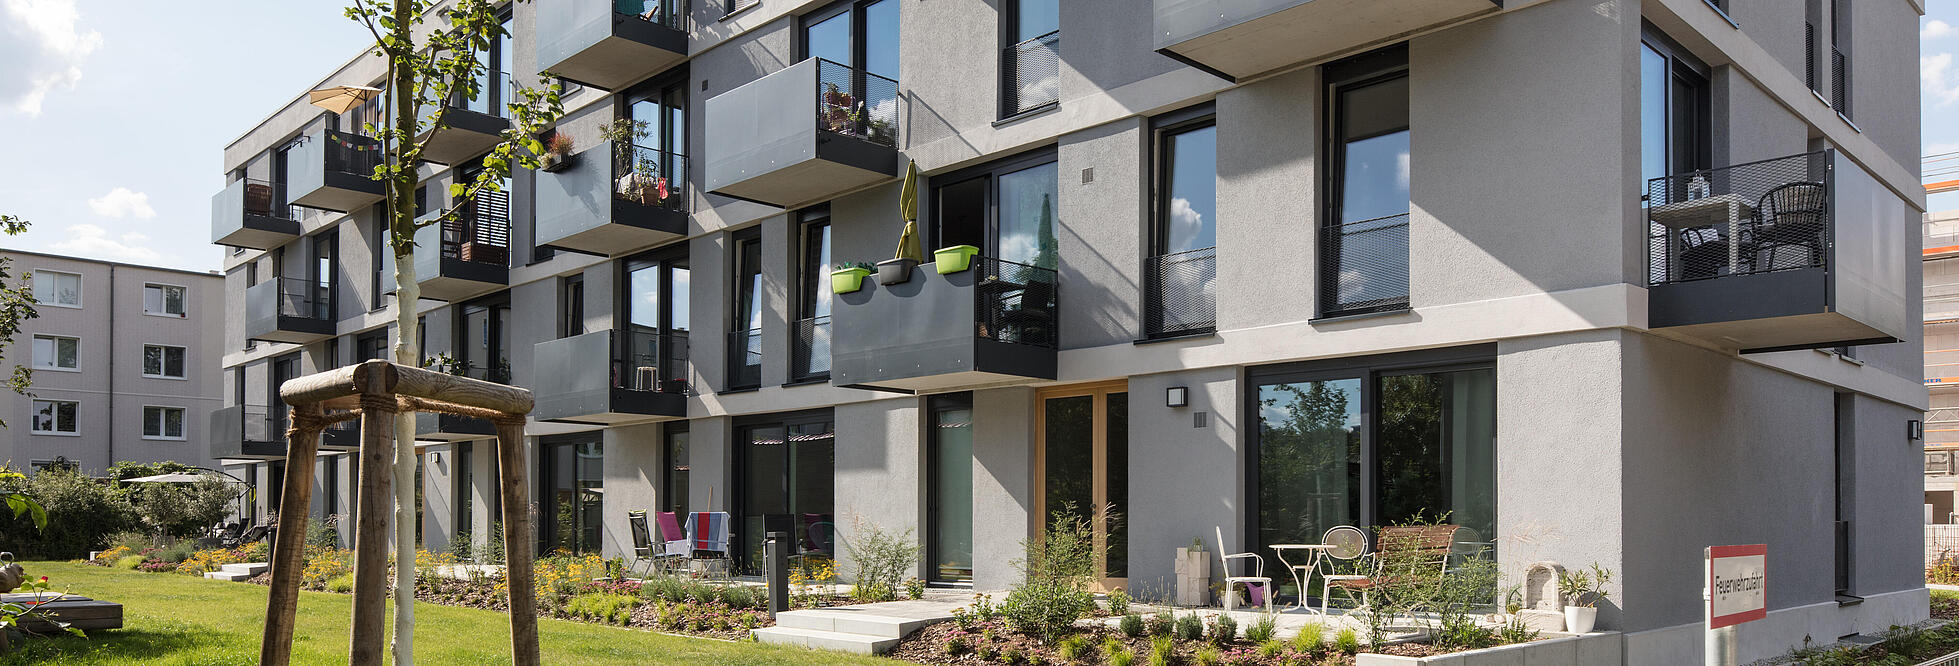 Außenaufnahme zeigt das neugebaute Mehrfamilienhaus mit Balkonen 